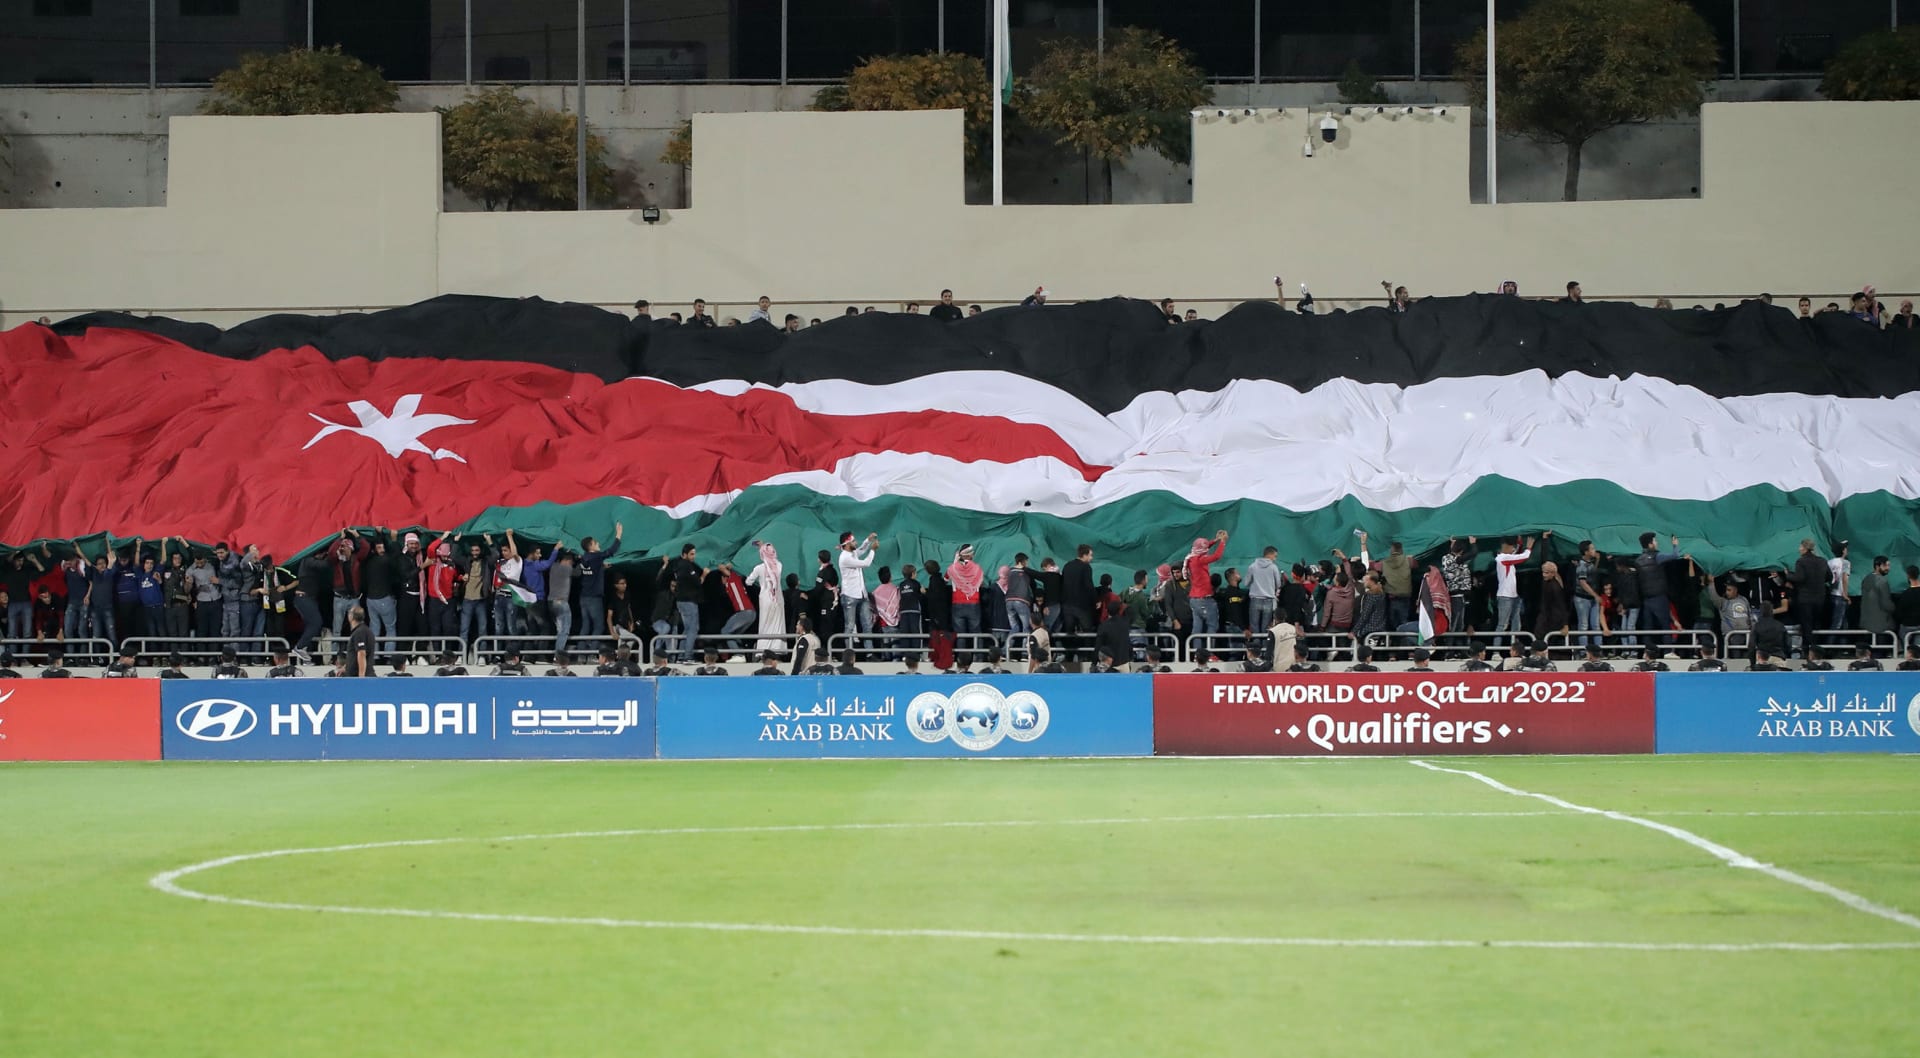 الاتحاد الأردني لكرة القدم يطالب بفرض عقوبات على الرياضة الإسرائيلية.. وإبعاد منتخباتها وأنديتها عن البطولات